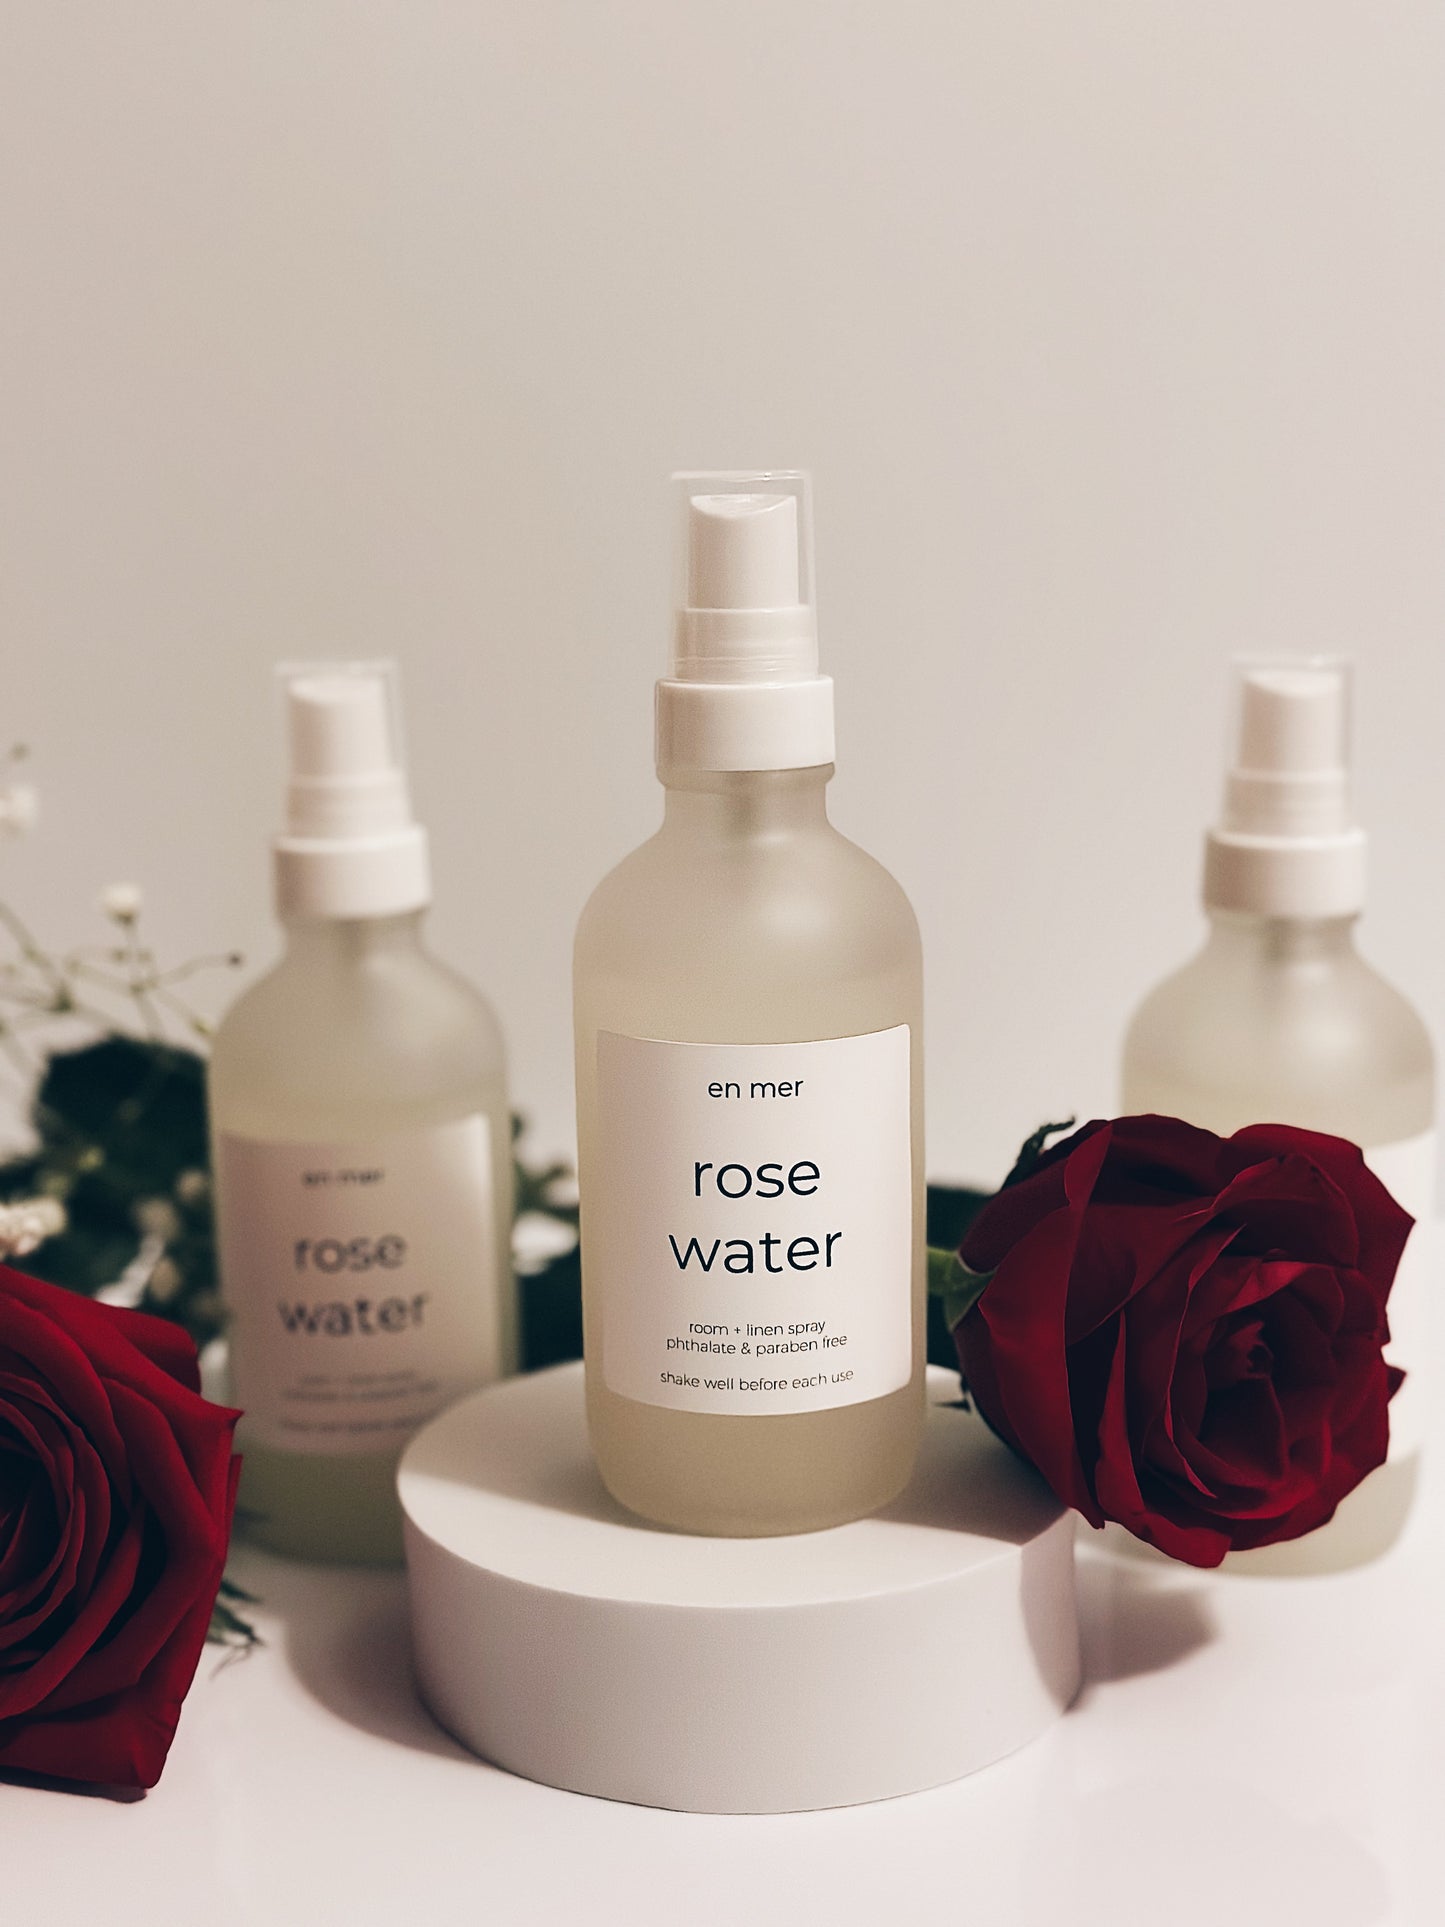 en mer | rose water | room + linen spray